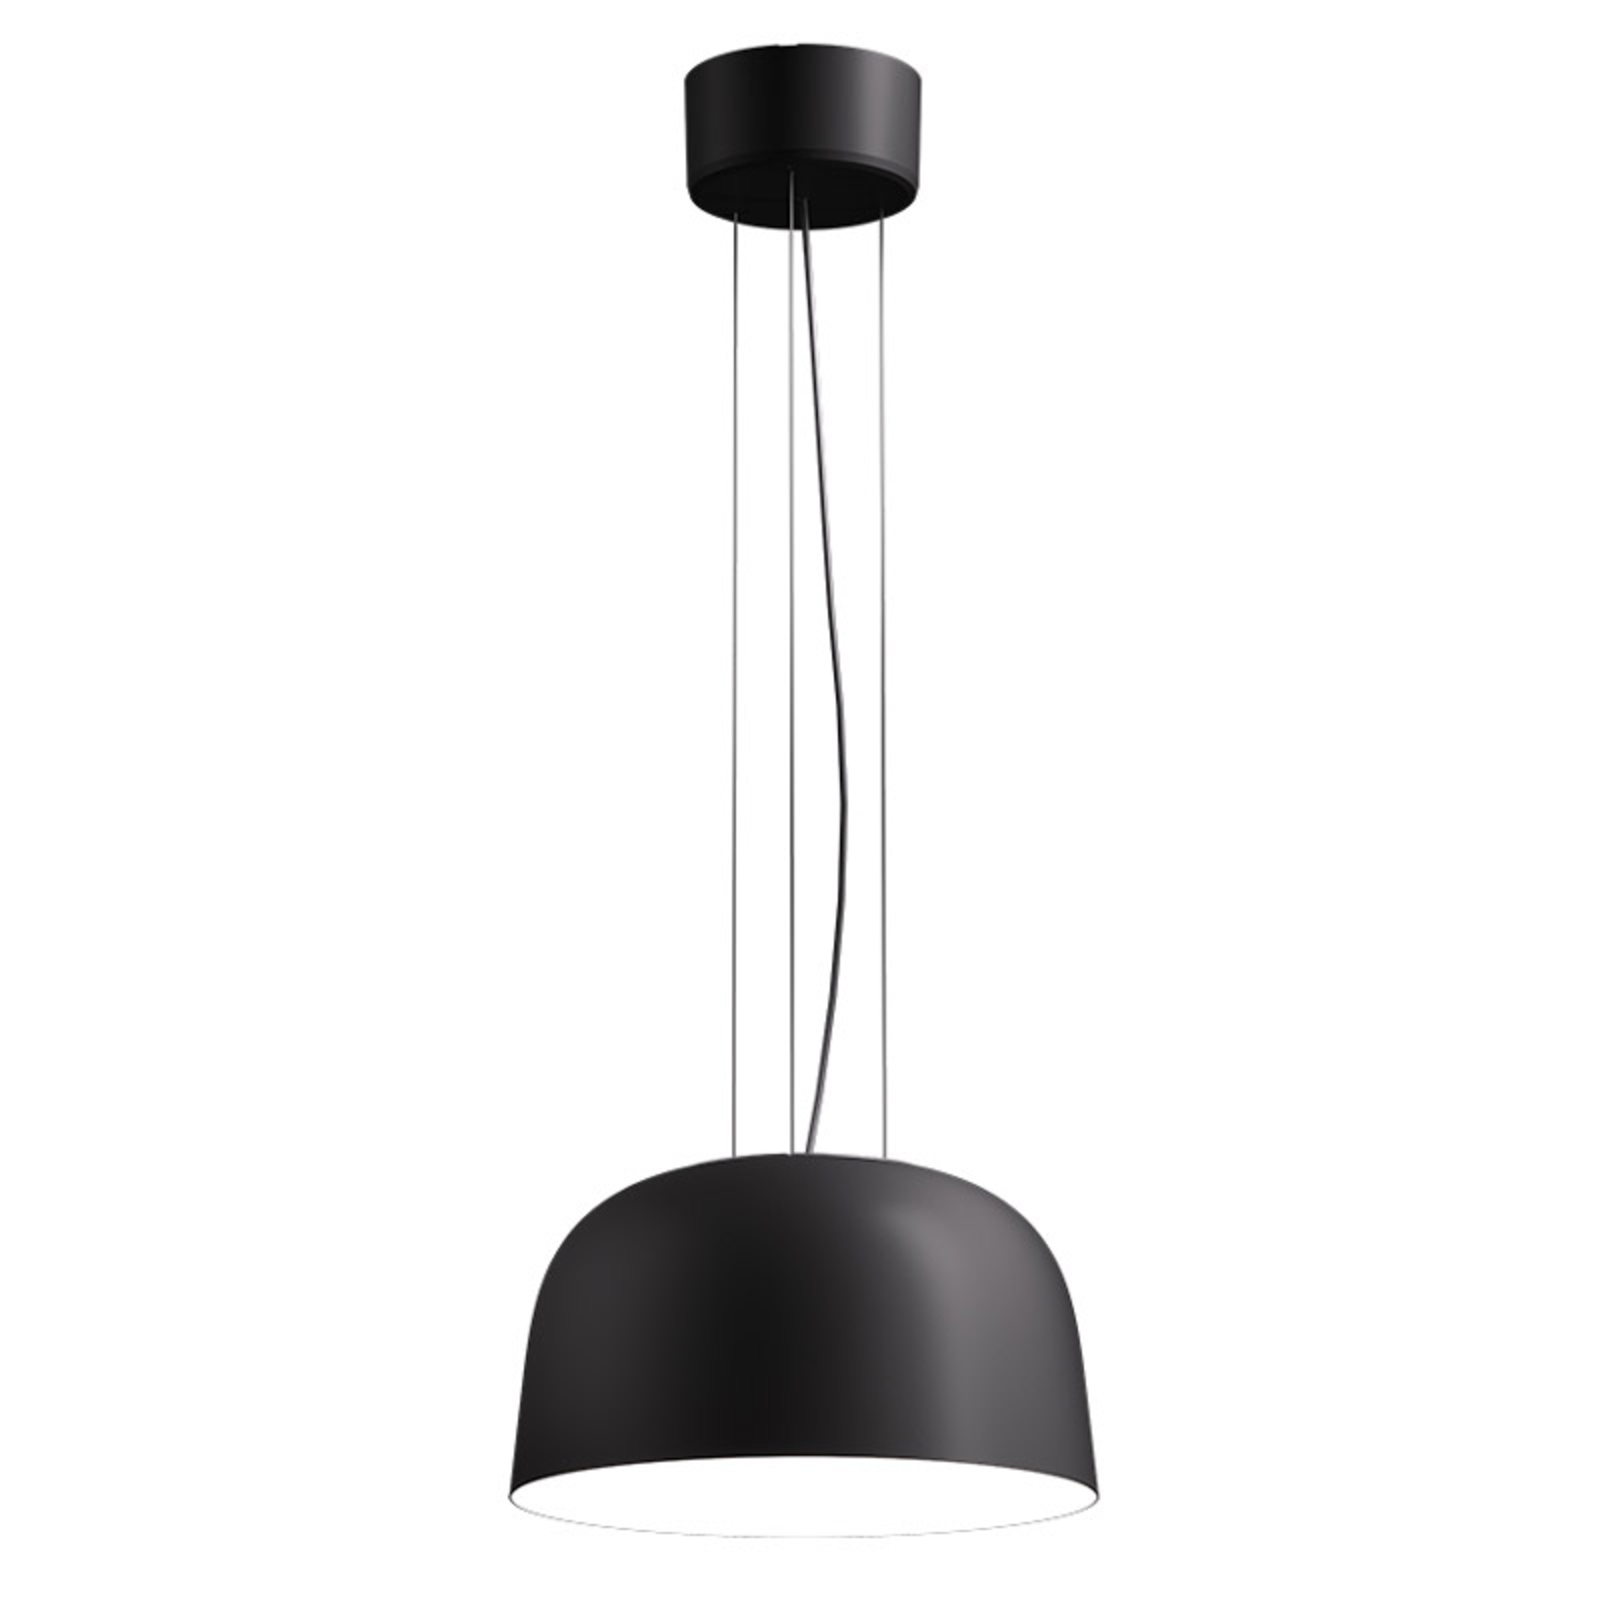 LED pakabinamas šviestuvas Sva 840 Dali Ø 35,6cm juodas